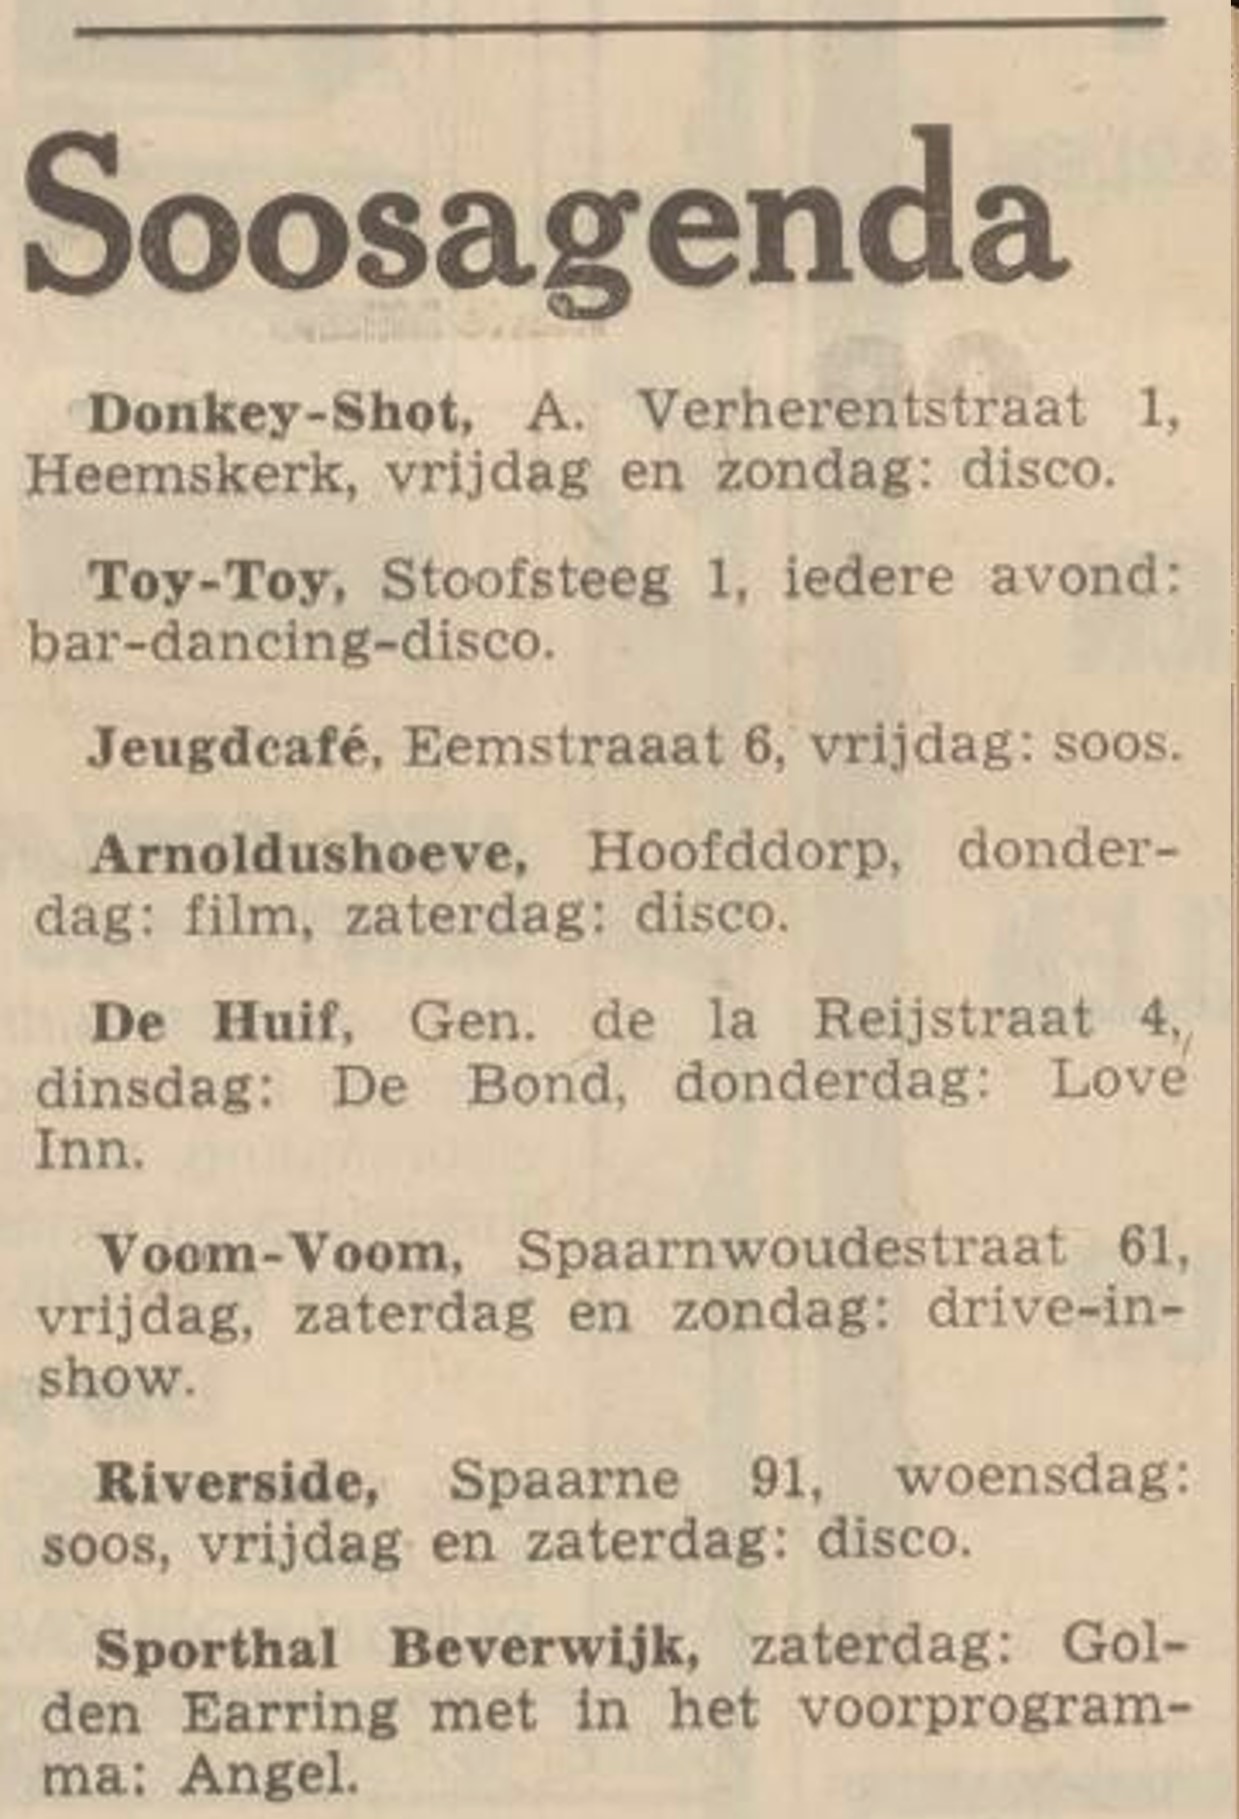 Golden Earring Beverwijk soosagenda newspaper article Beverwijk show July 08 1972